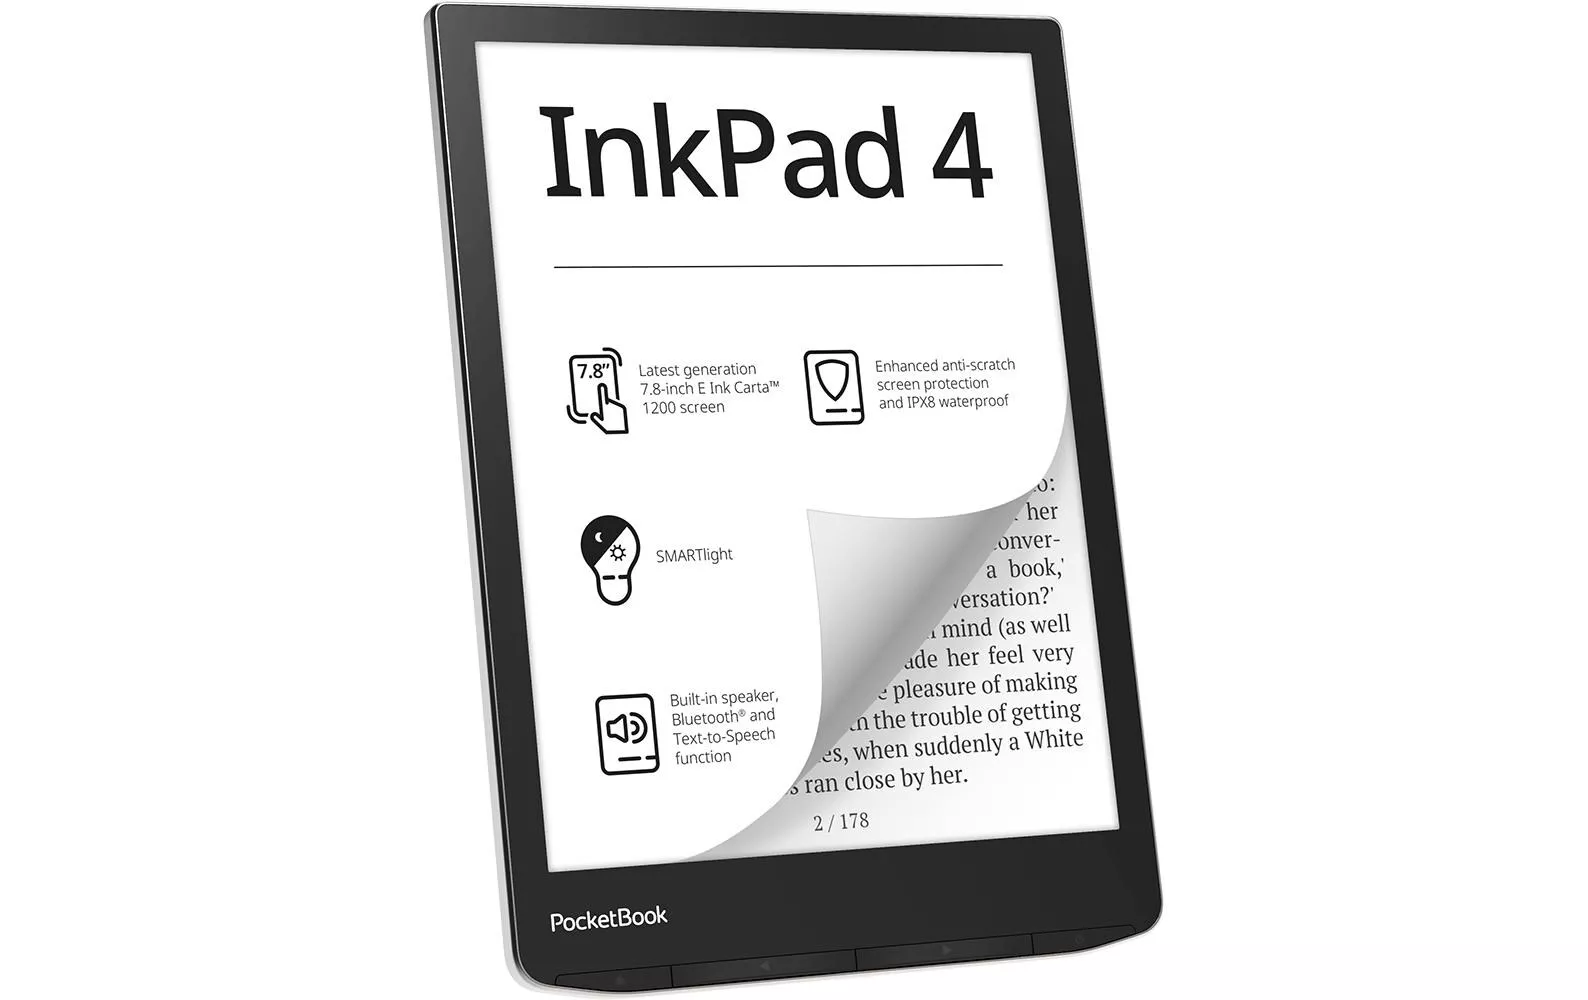 Lettore di libri elettronici PocketBook InkPad 4 Argento